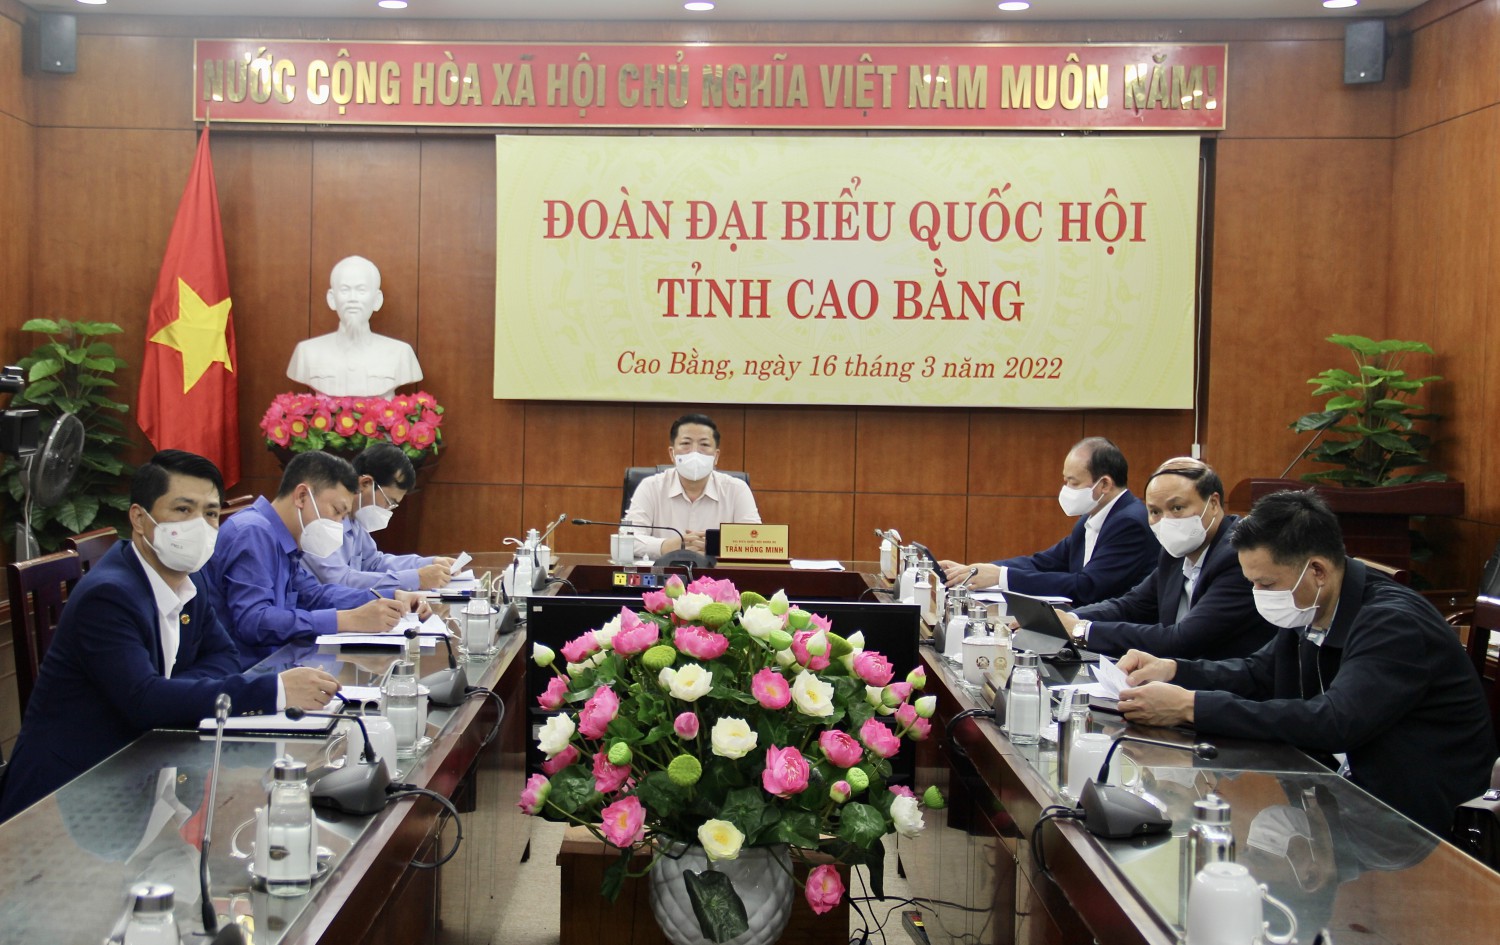 Các đại biểu dự phiên chất vấn và trả lời chất vấn tại điểm cầu Cao Bằng